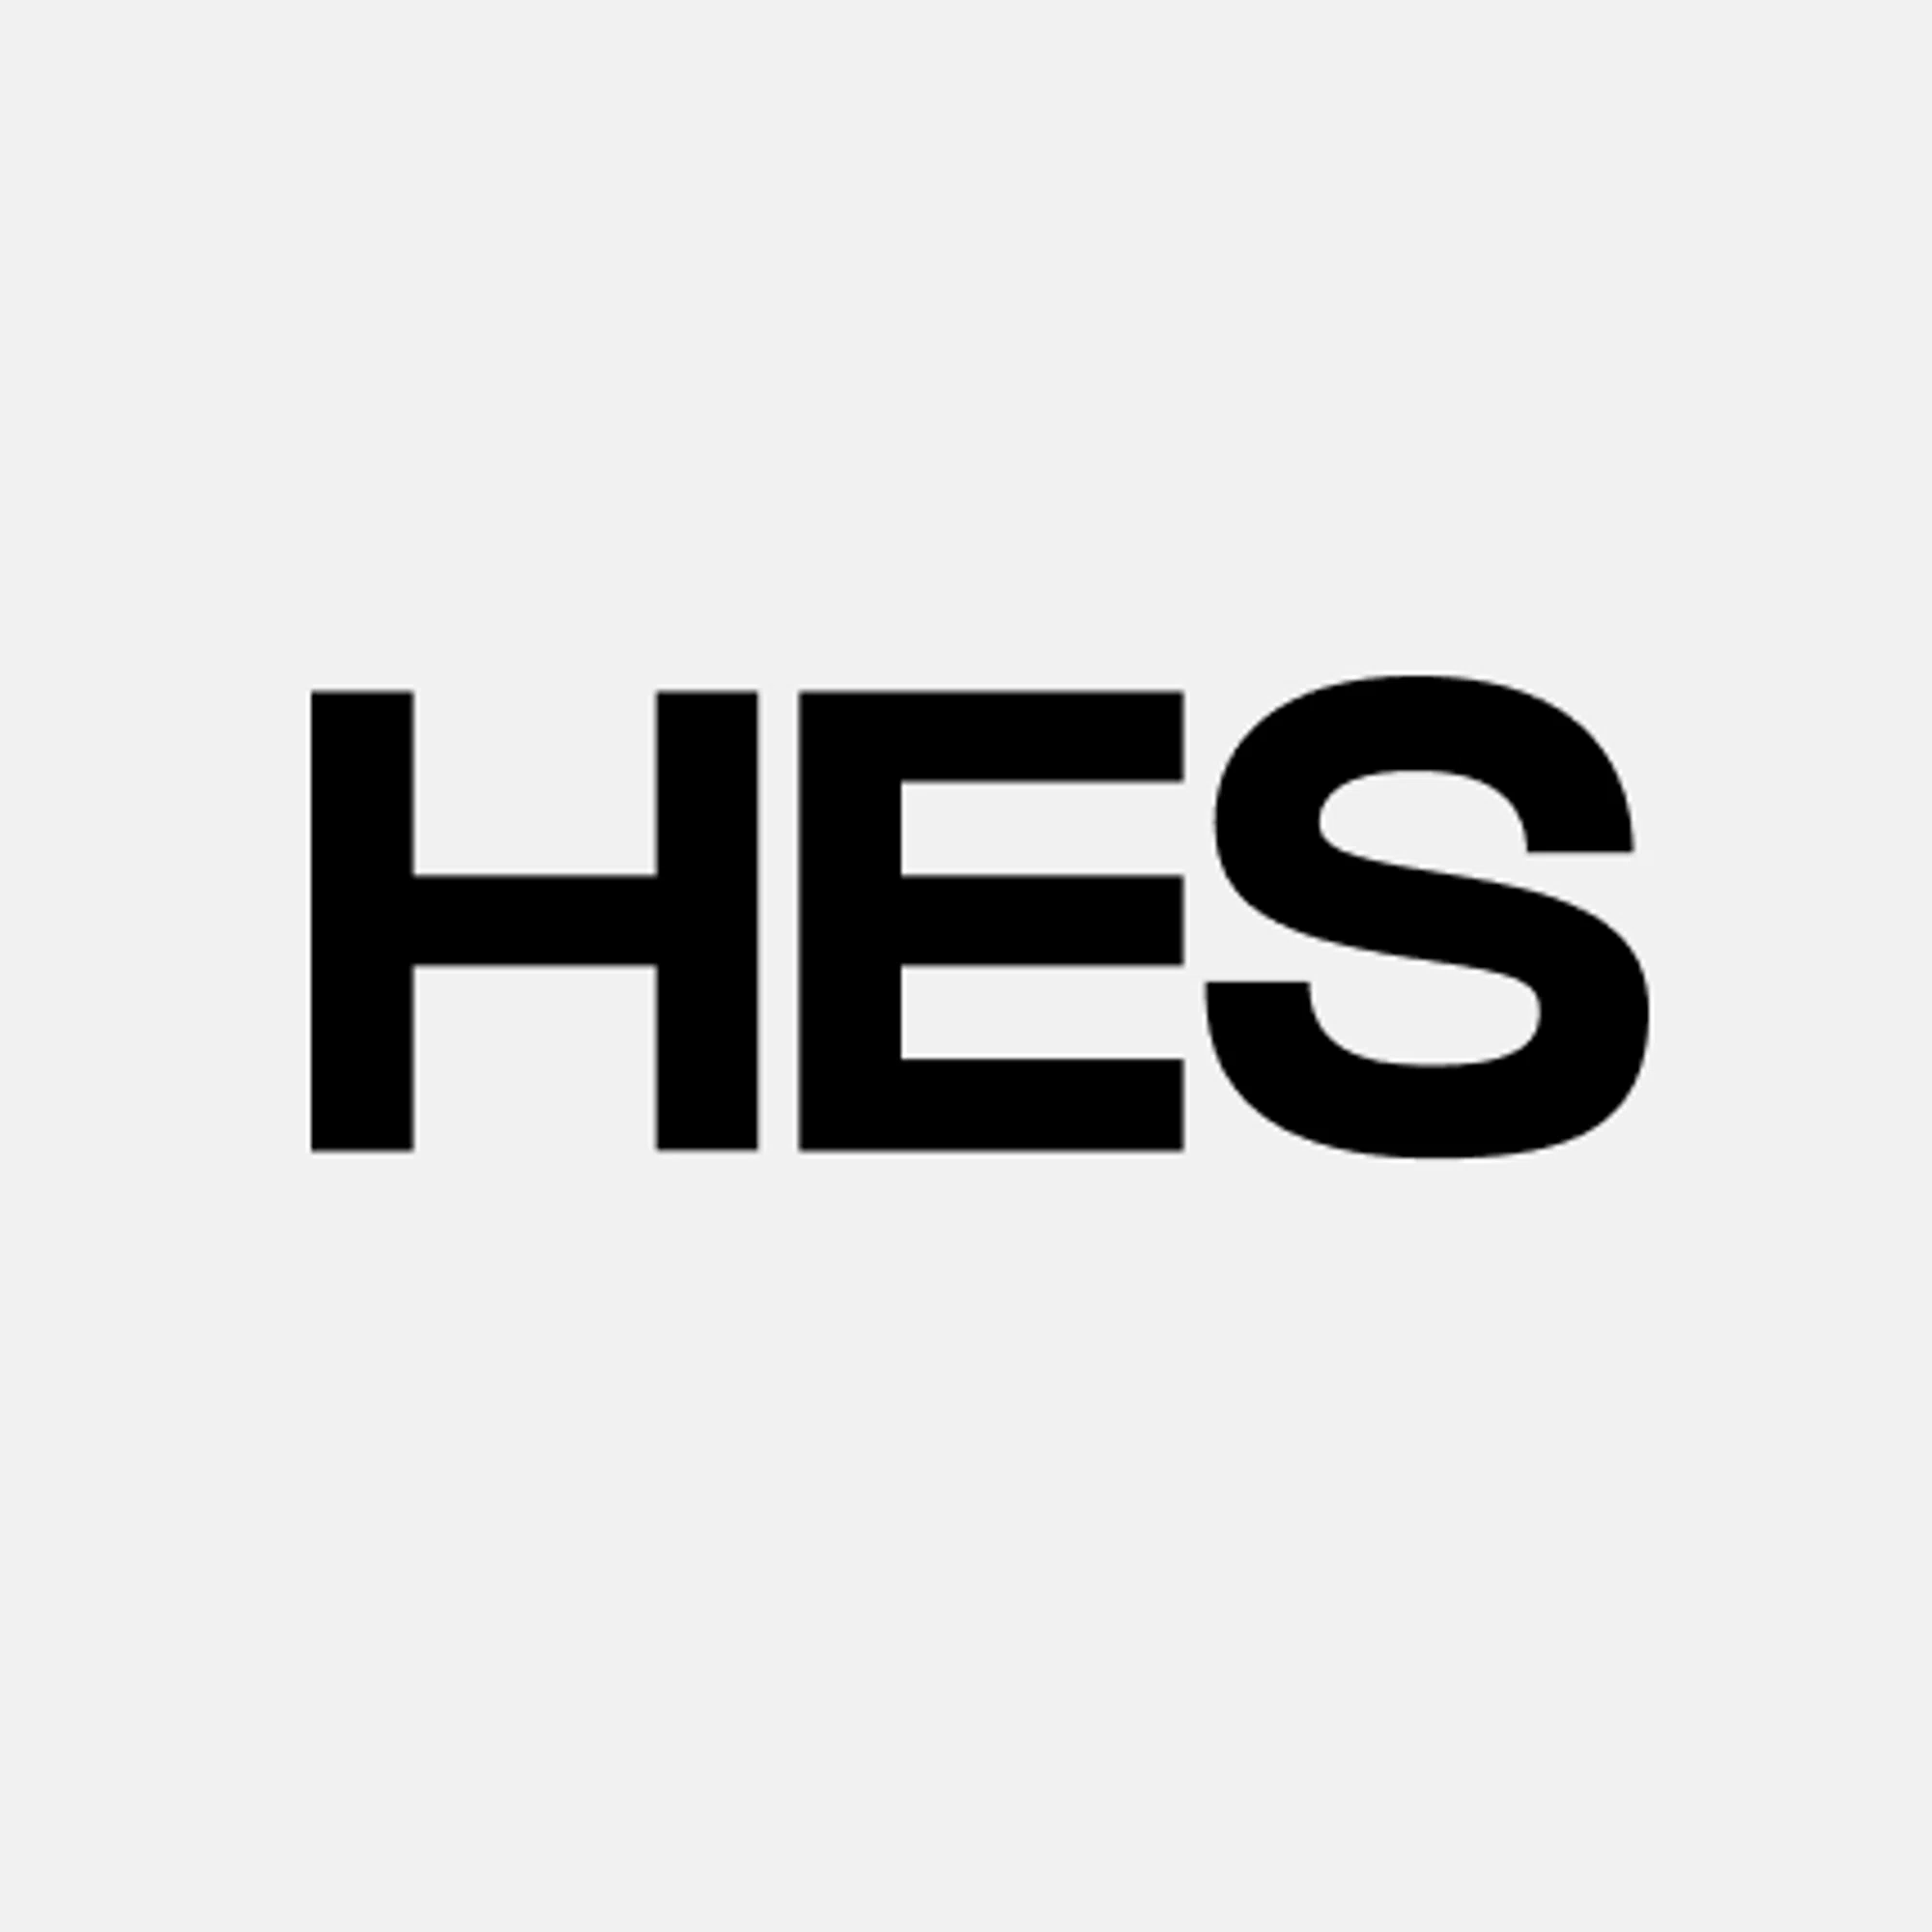 hesfintech.com logo